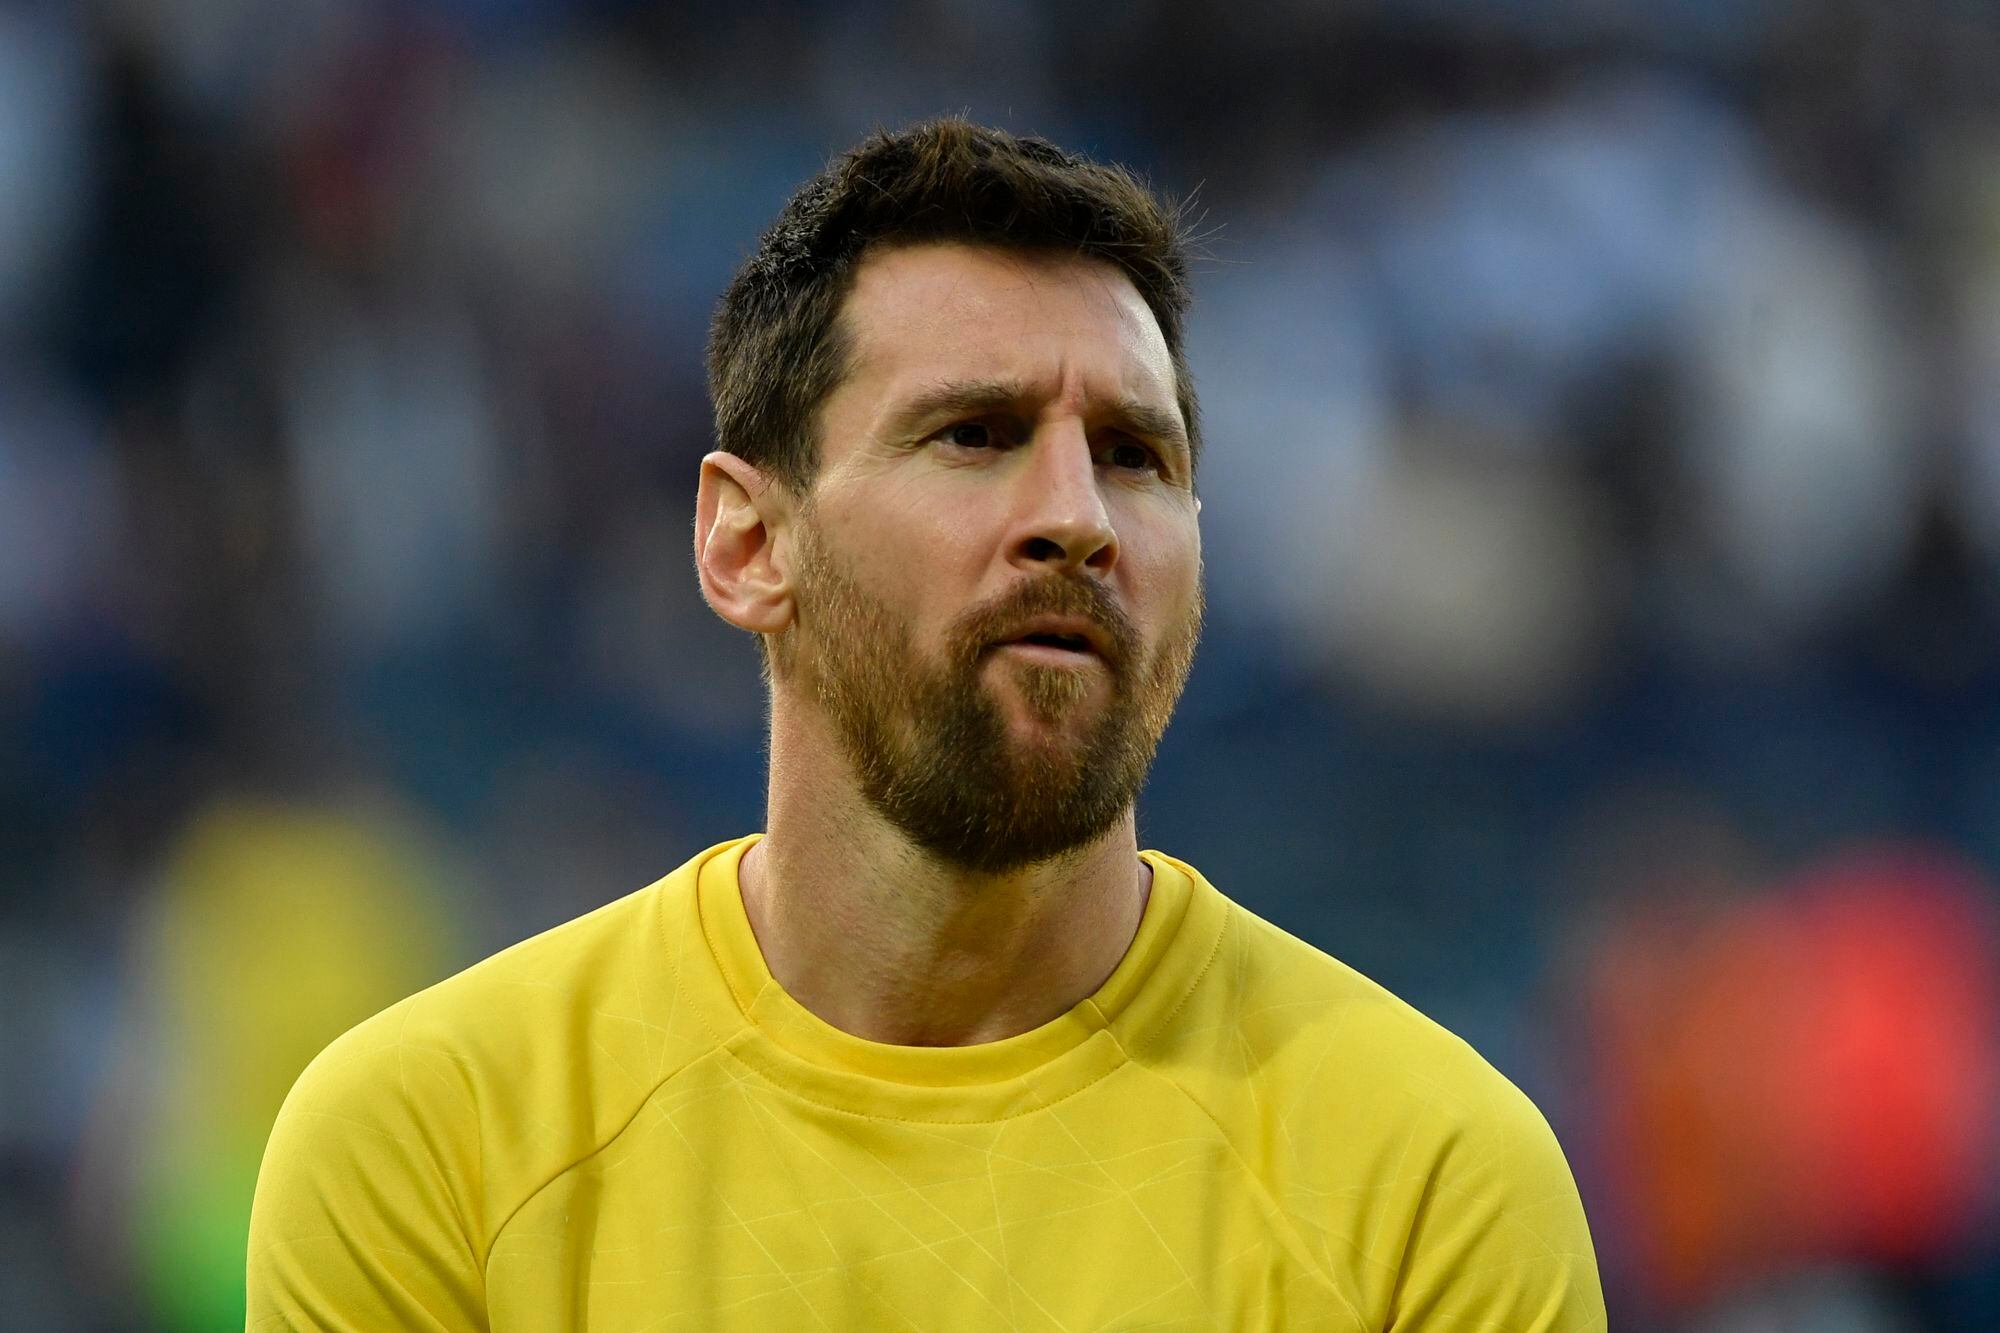 El actual delantero del PSG Lionel Messi definirá su futuro en los próximos días según la prensa catalana